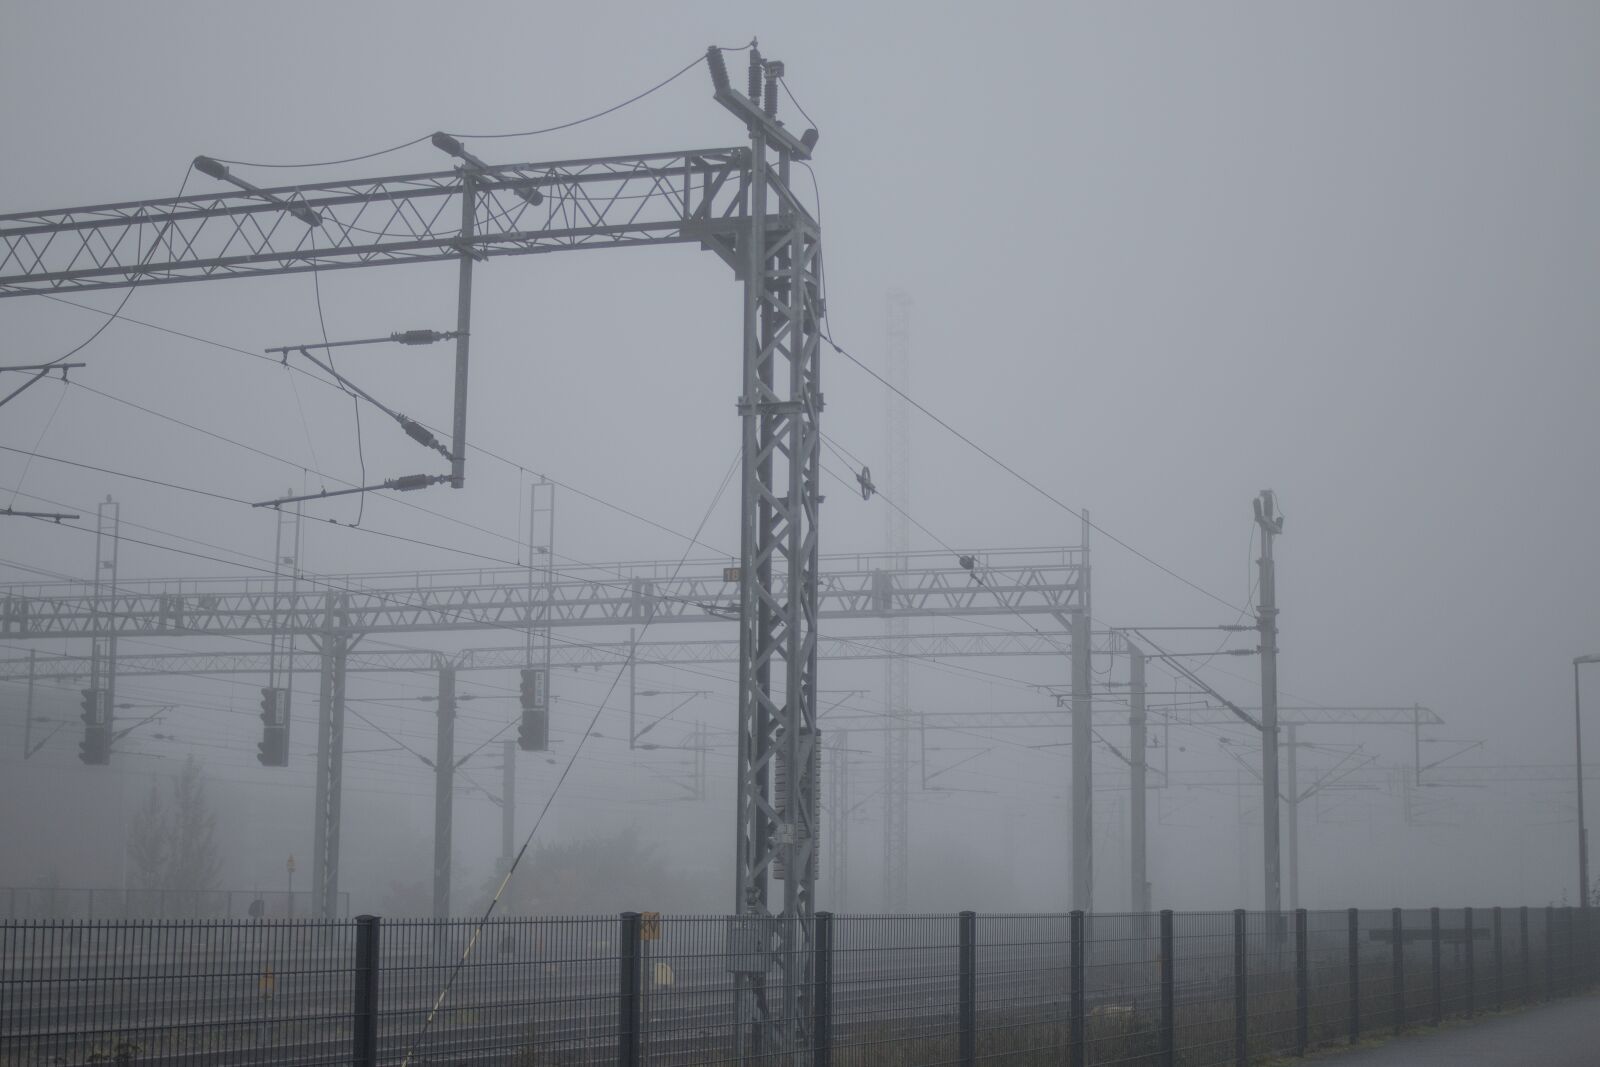 Canon EOS 70D + Canon EF 35mm F2 sample photo. Mist, fog, railway track photography